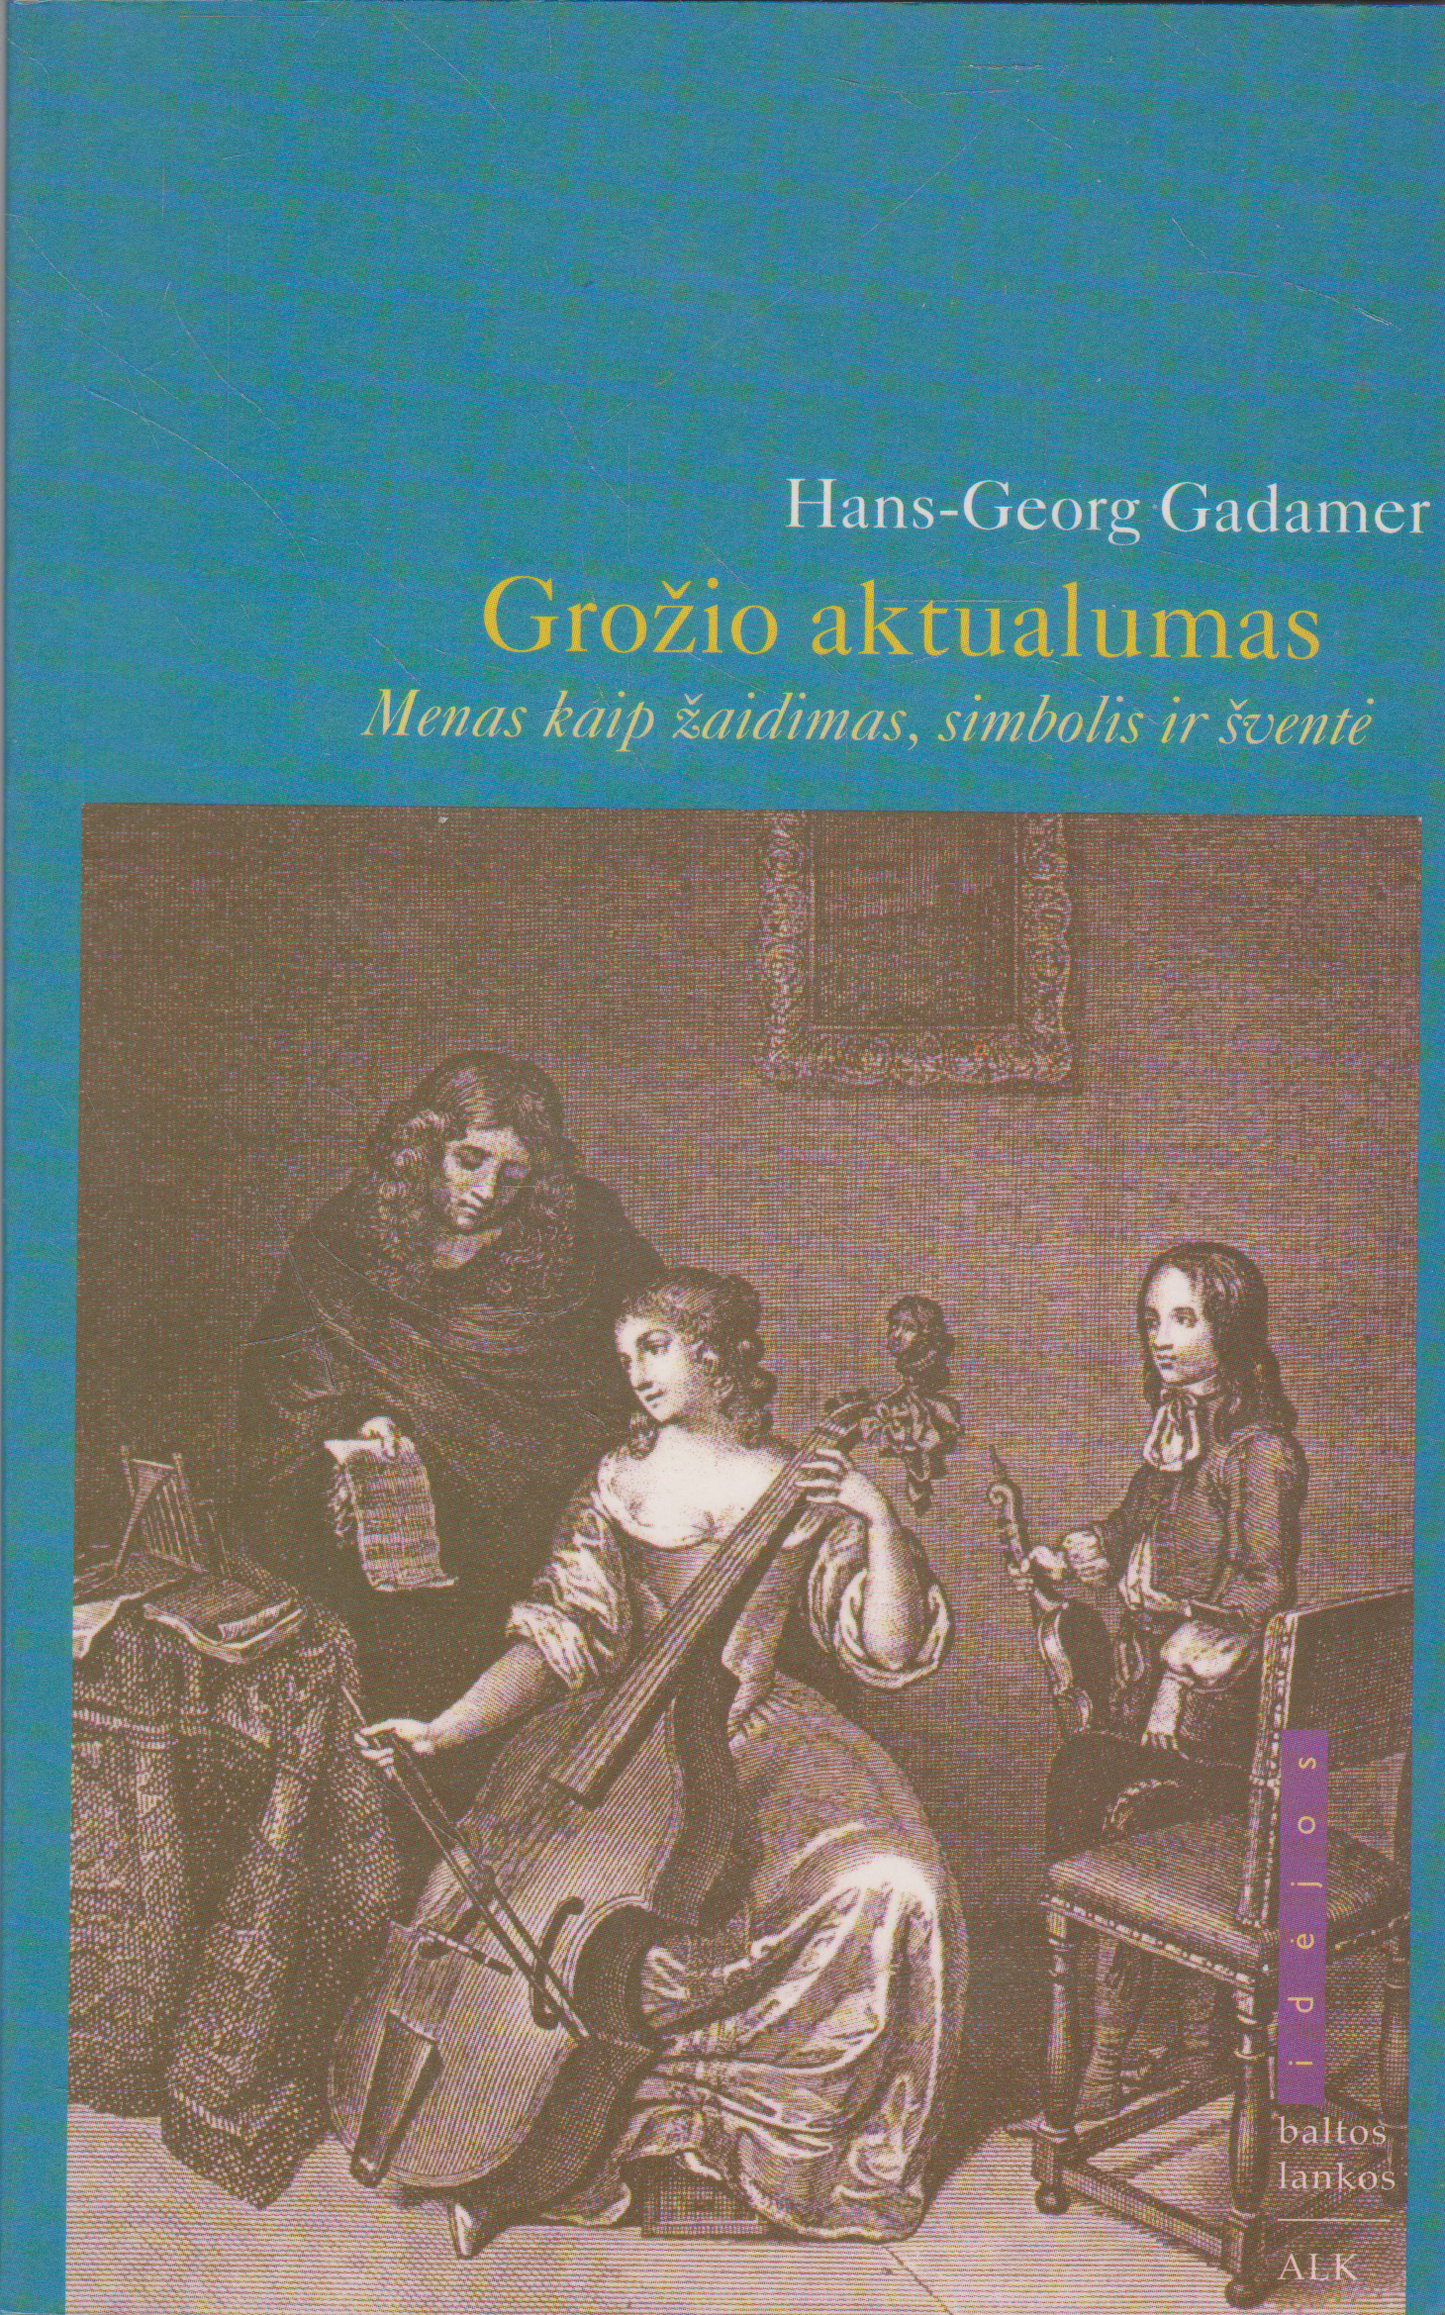 Hans - Georg Gadamer - Grožio aktualumas